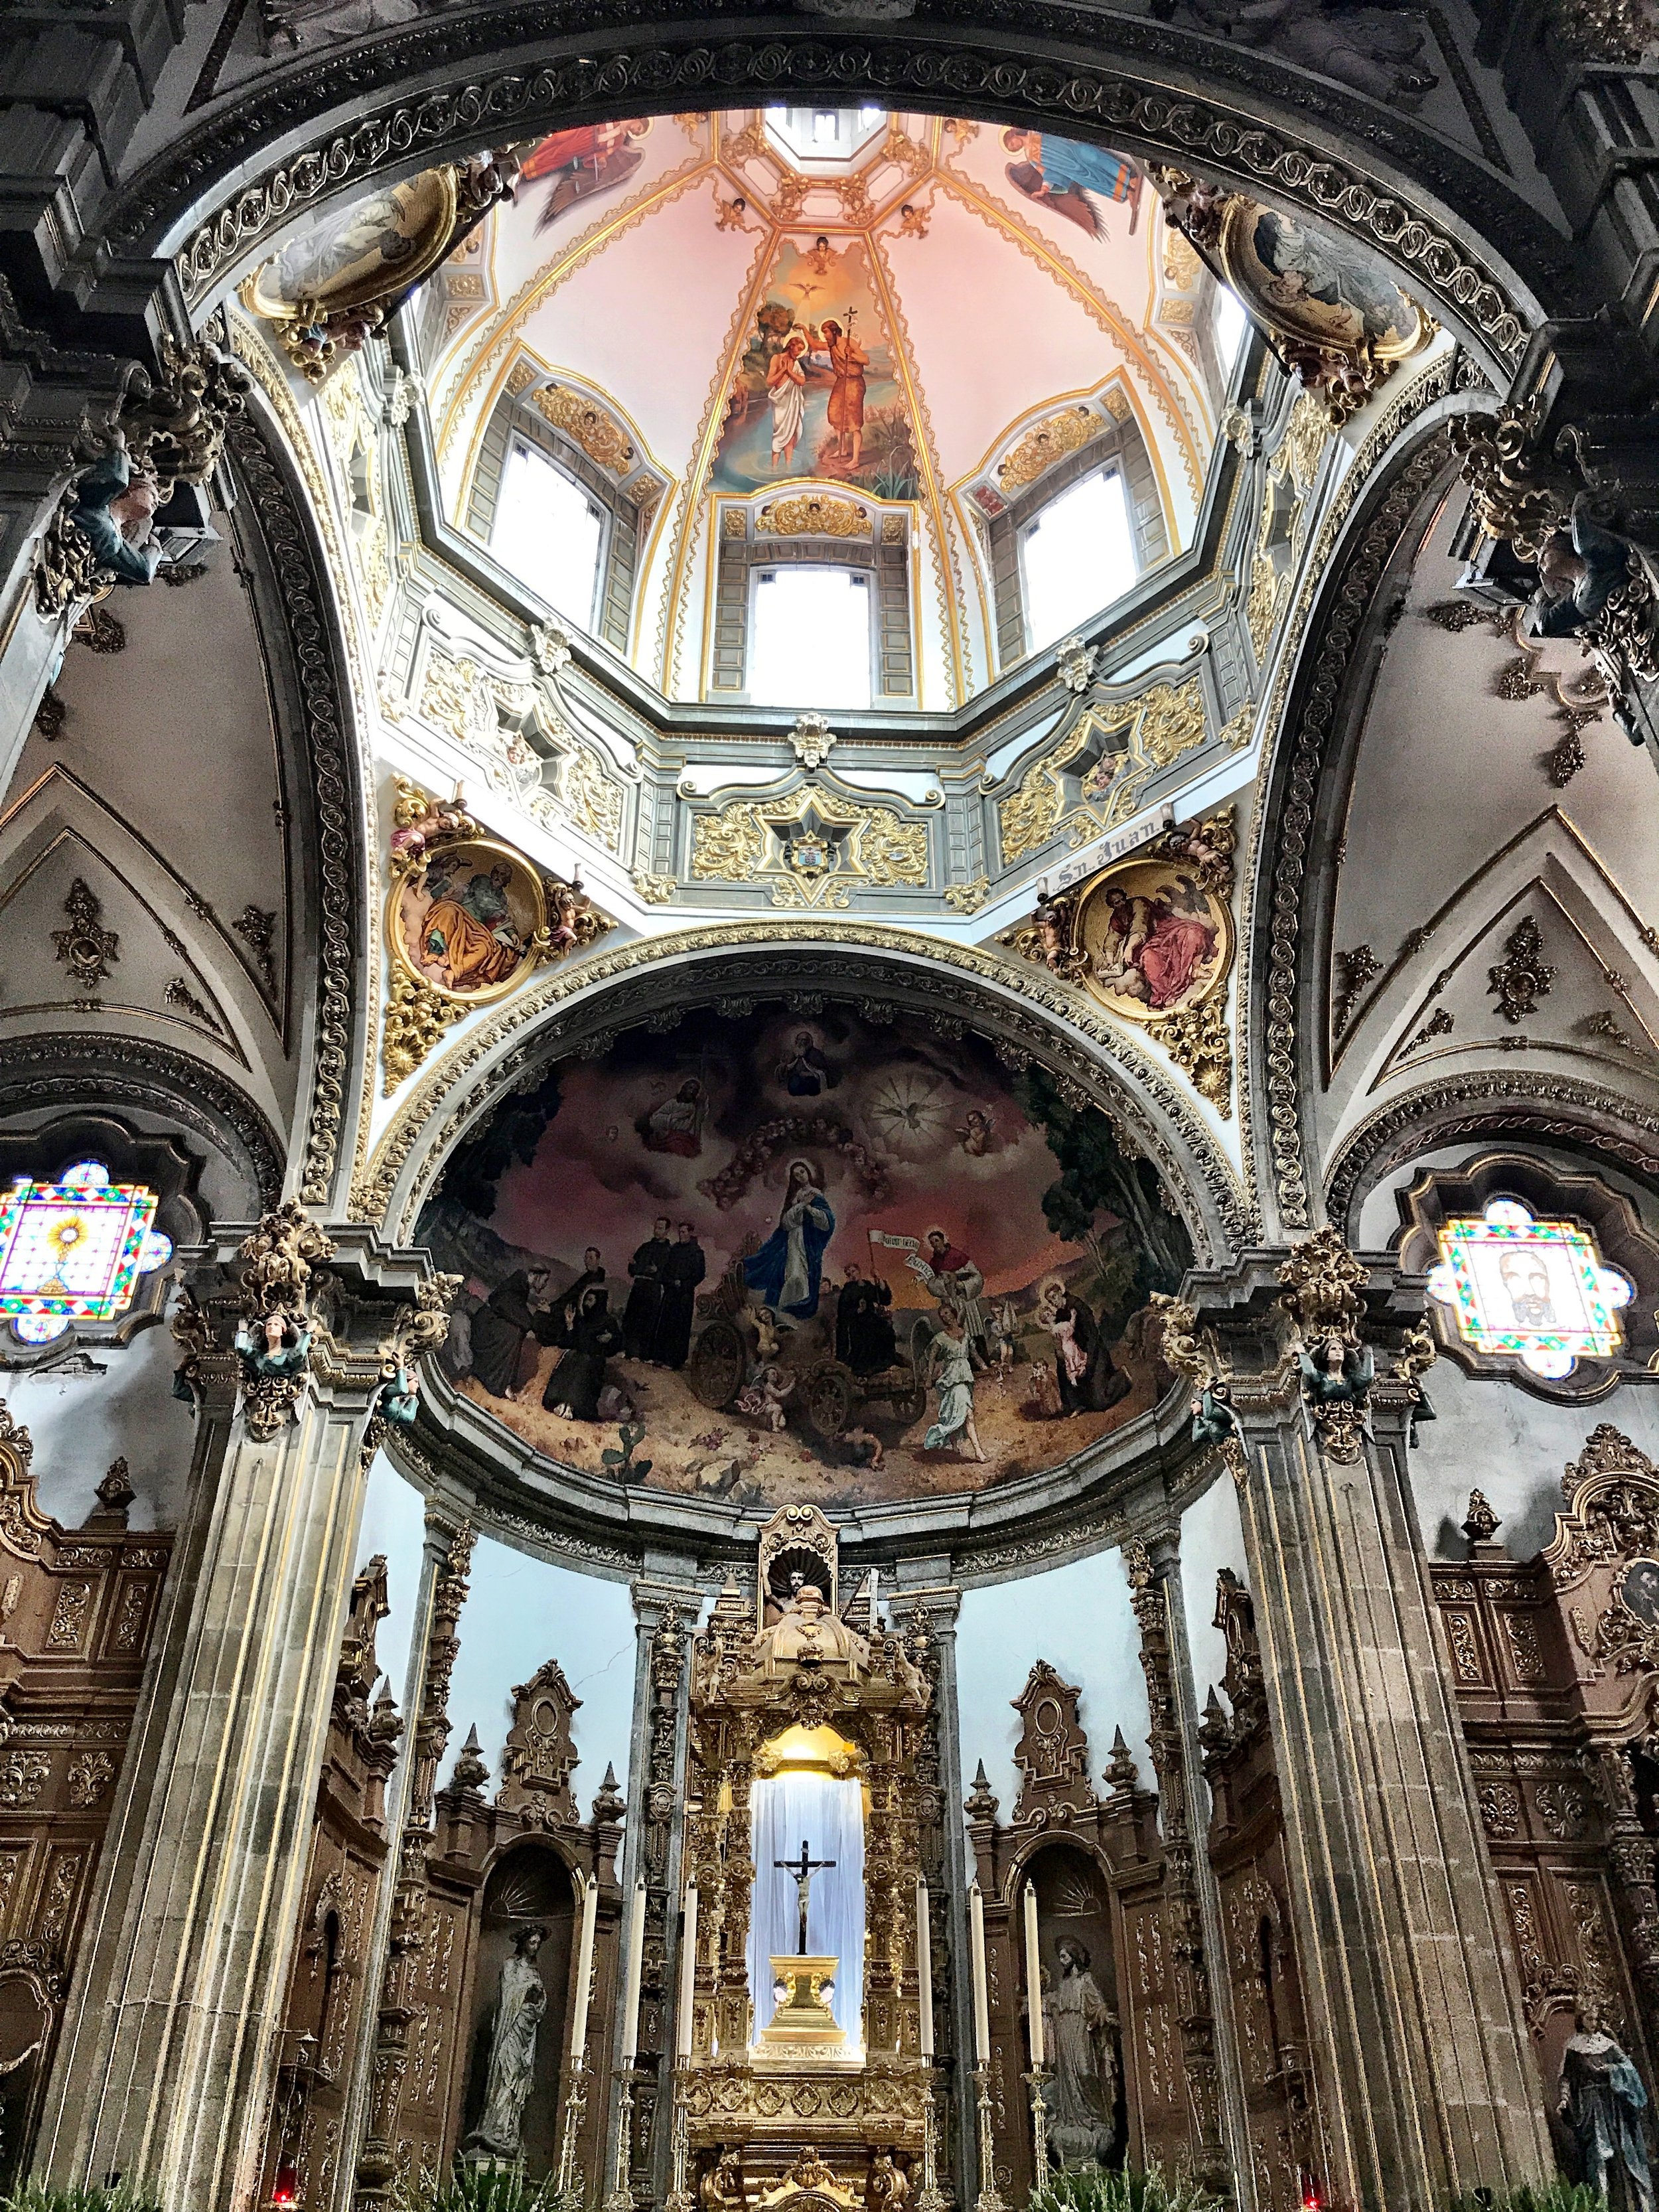 The Magnificent Parroquia San Juan Bautista